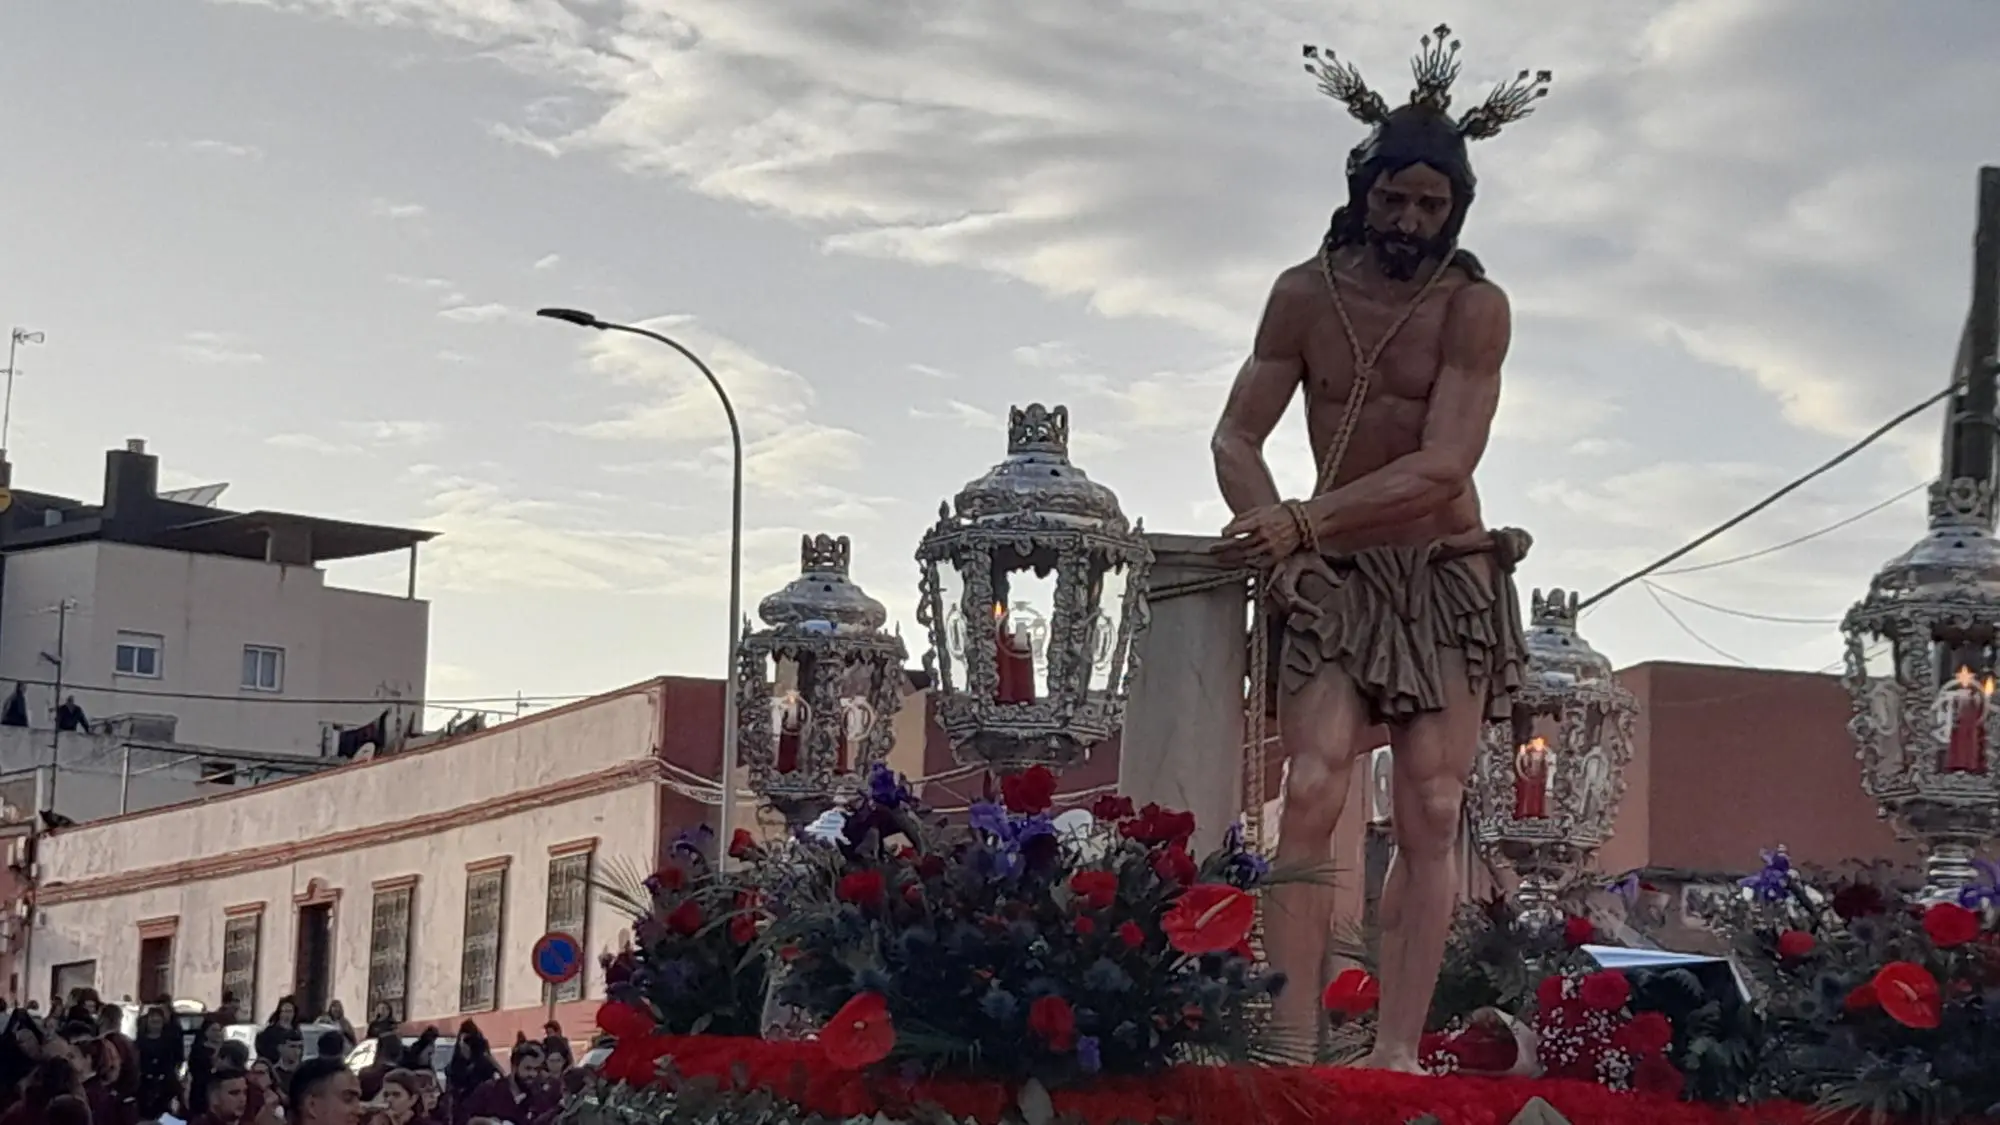 Lanzan una piedra contra una procesión en Melilla